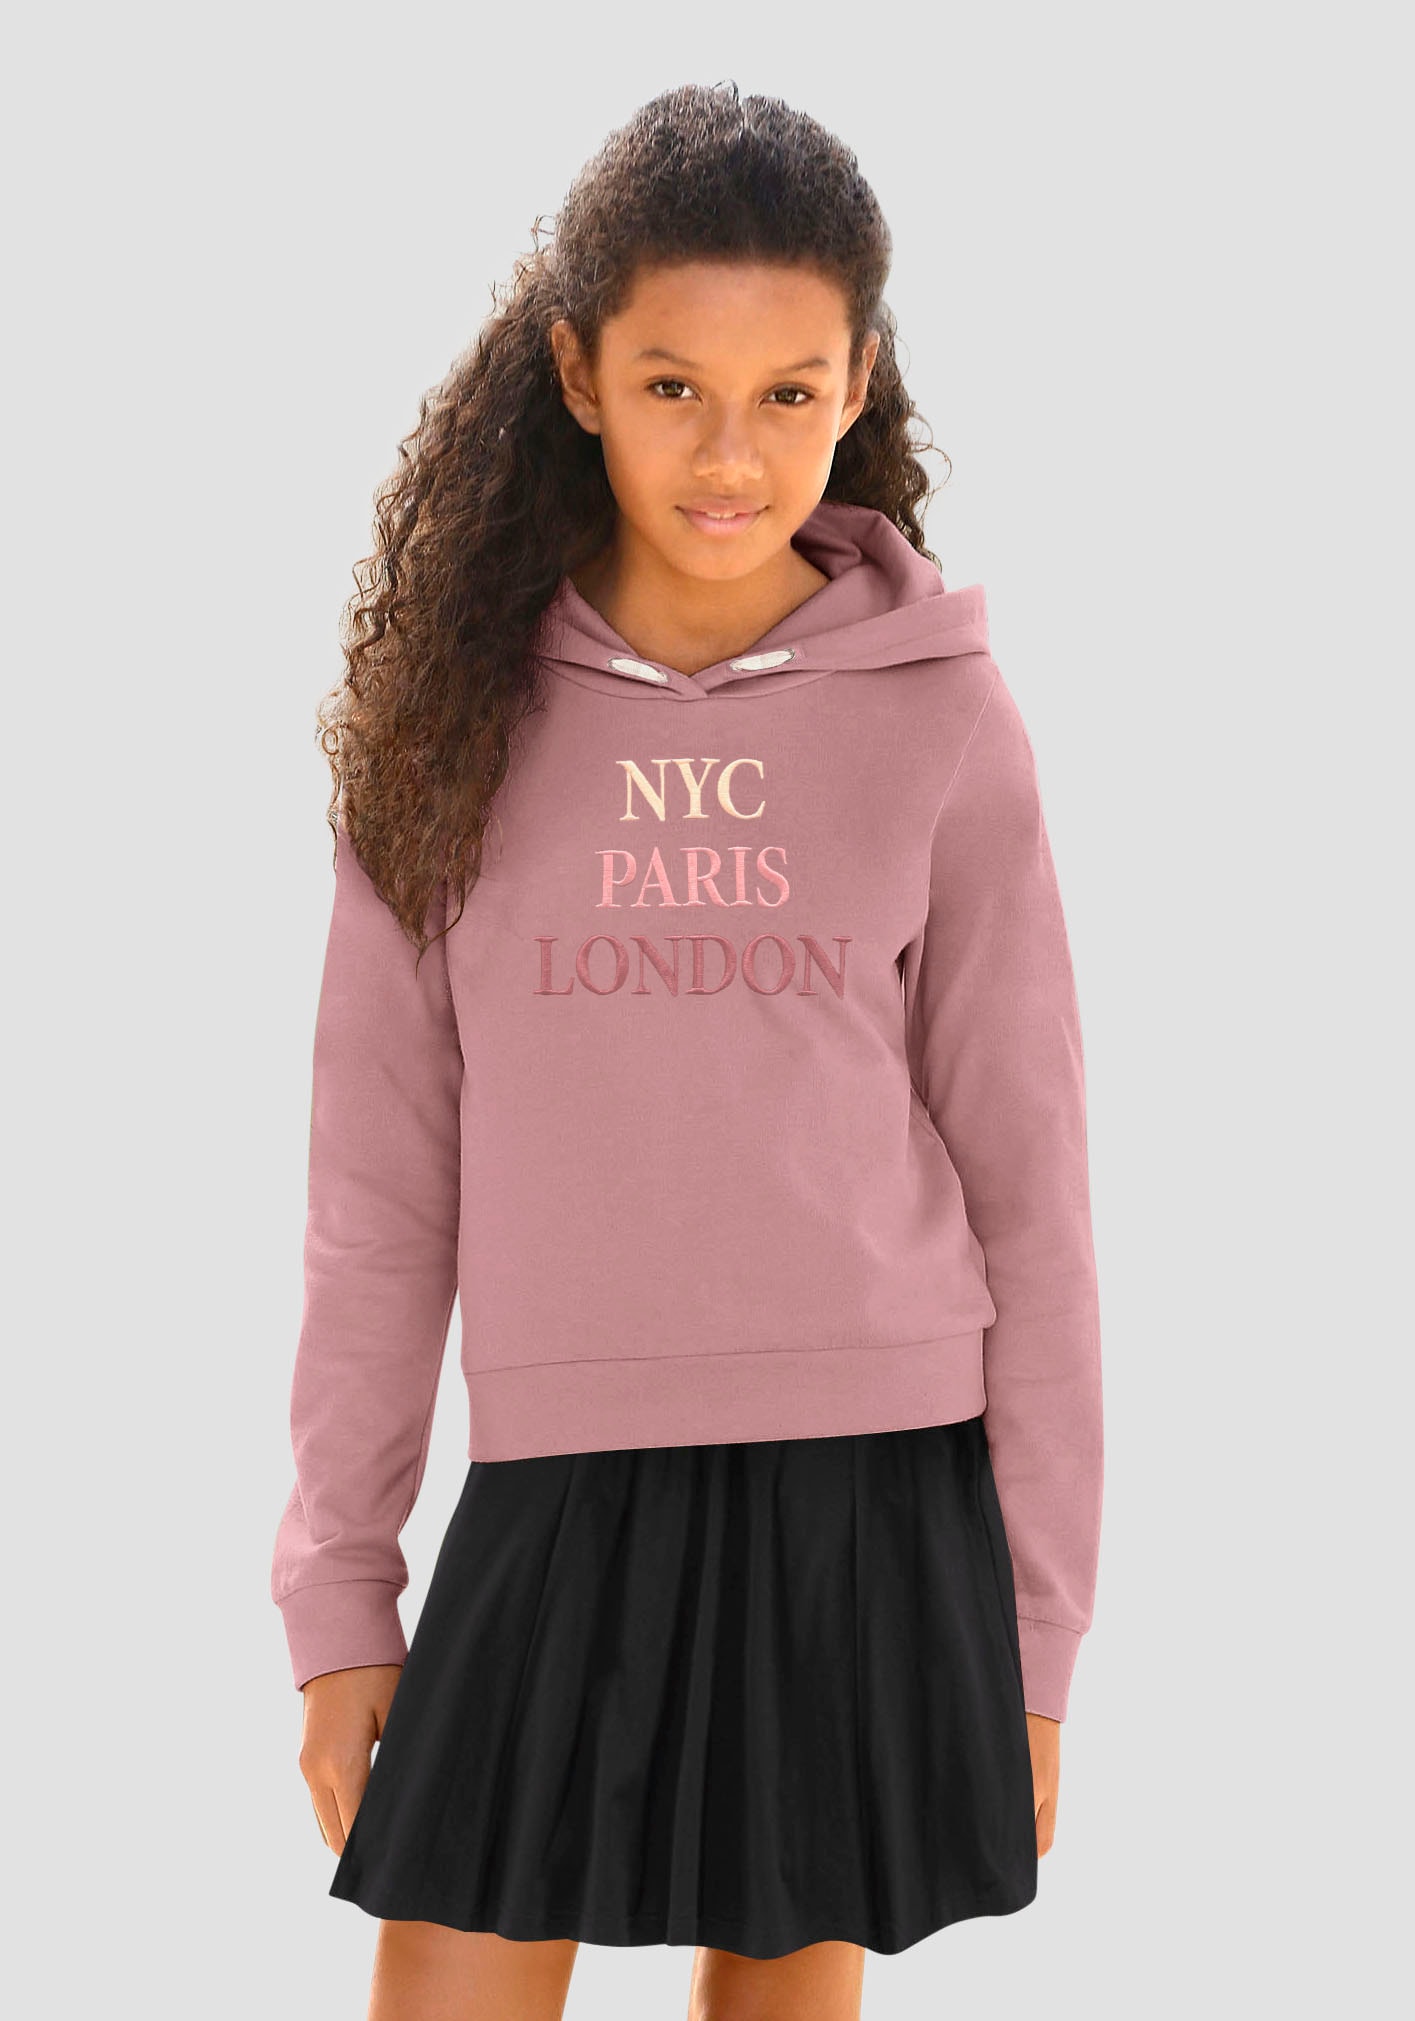 Paris Online Stickerei Kapuzensweatshirt mit KIDSWORLD im London«, »NYC OTTO Shop